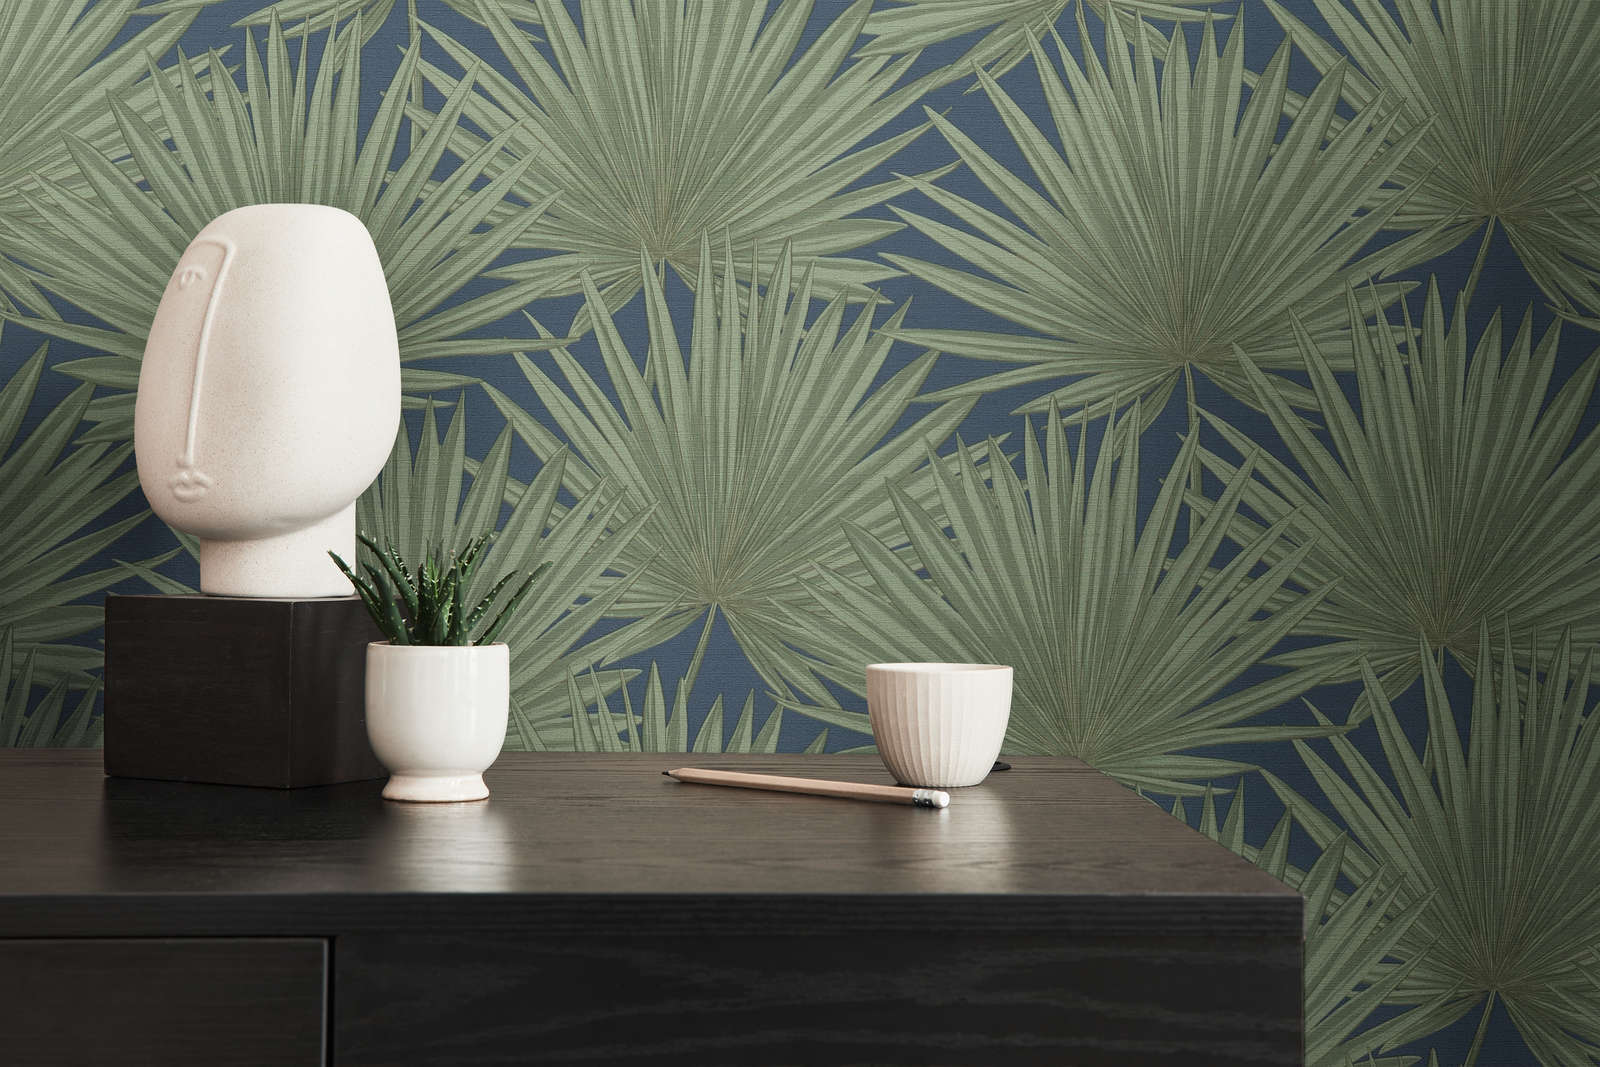             Vliestapete mit Palmblättern auf dezentem Hintergrund – Grün, Blau
        